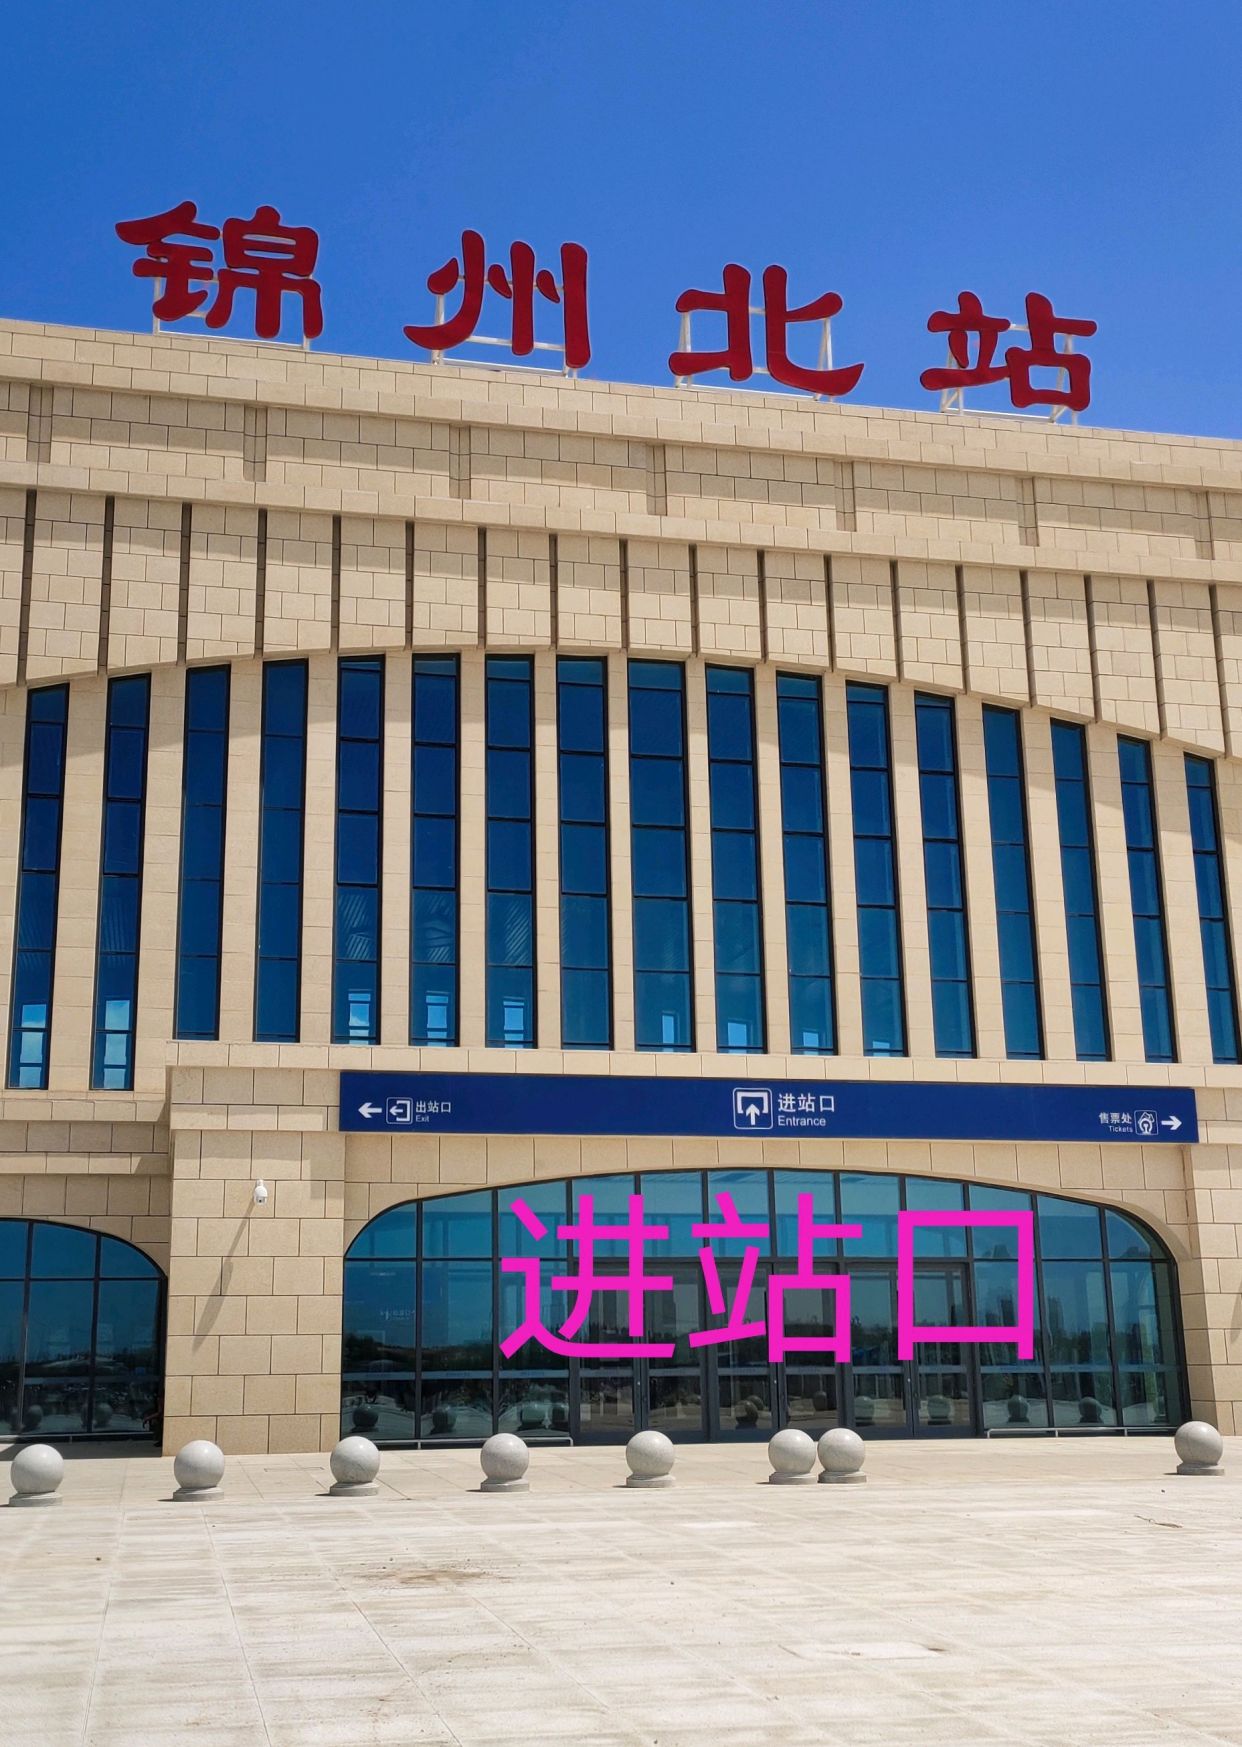 锦州北站站台图片